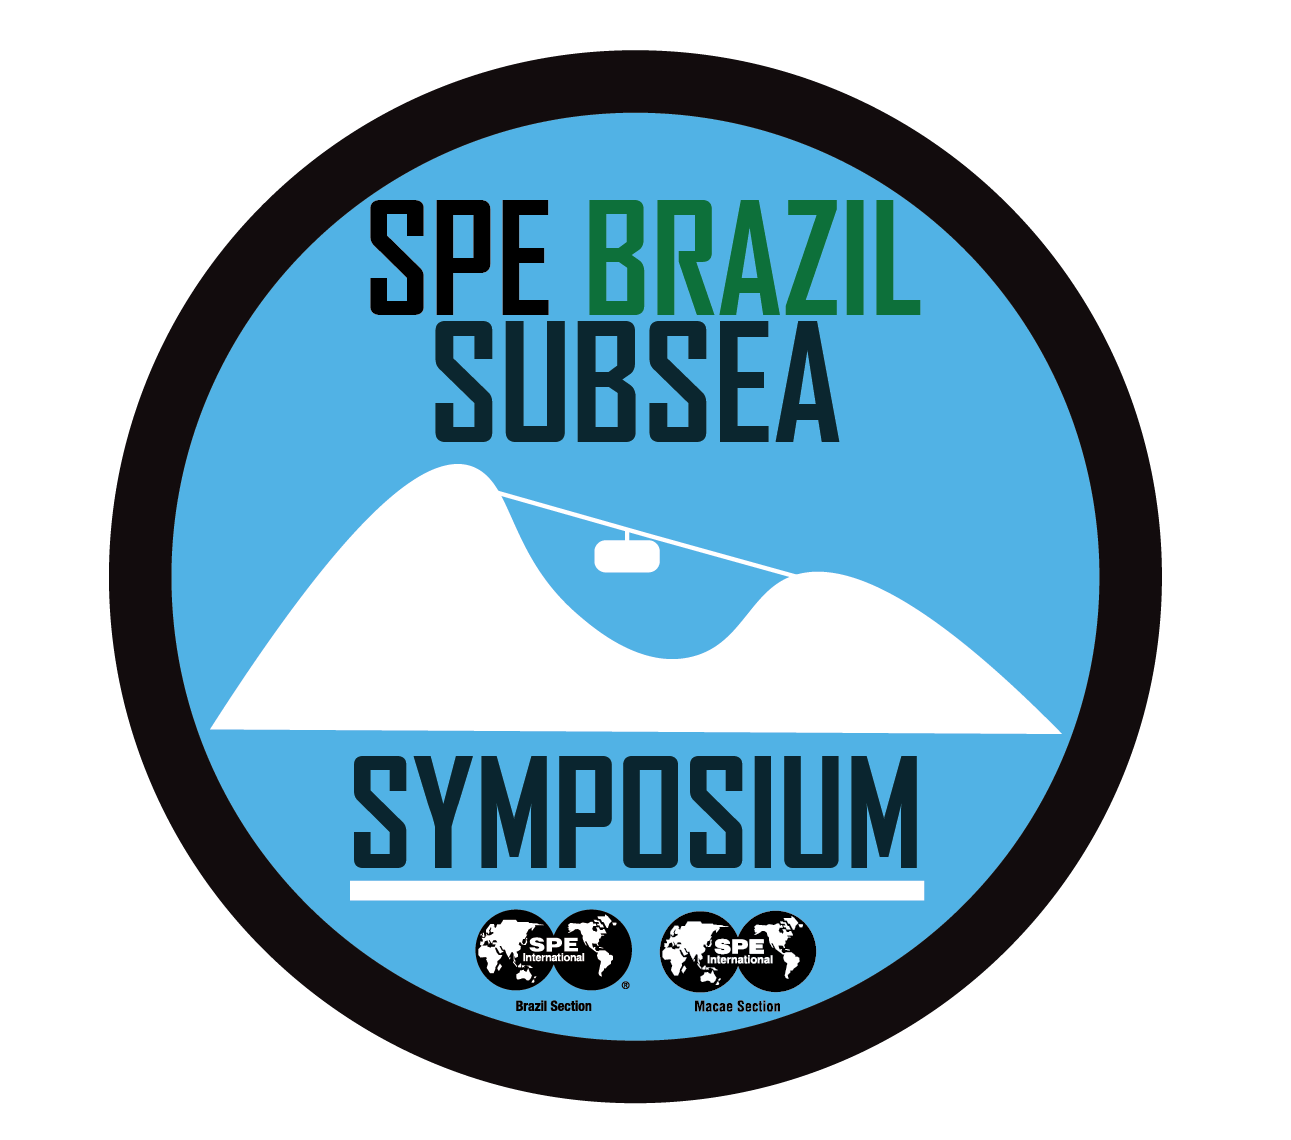 SPE Brazil Subsea Symposium